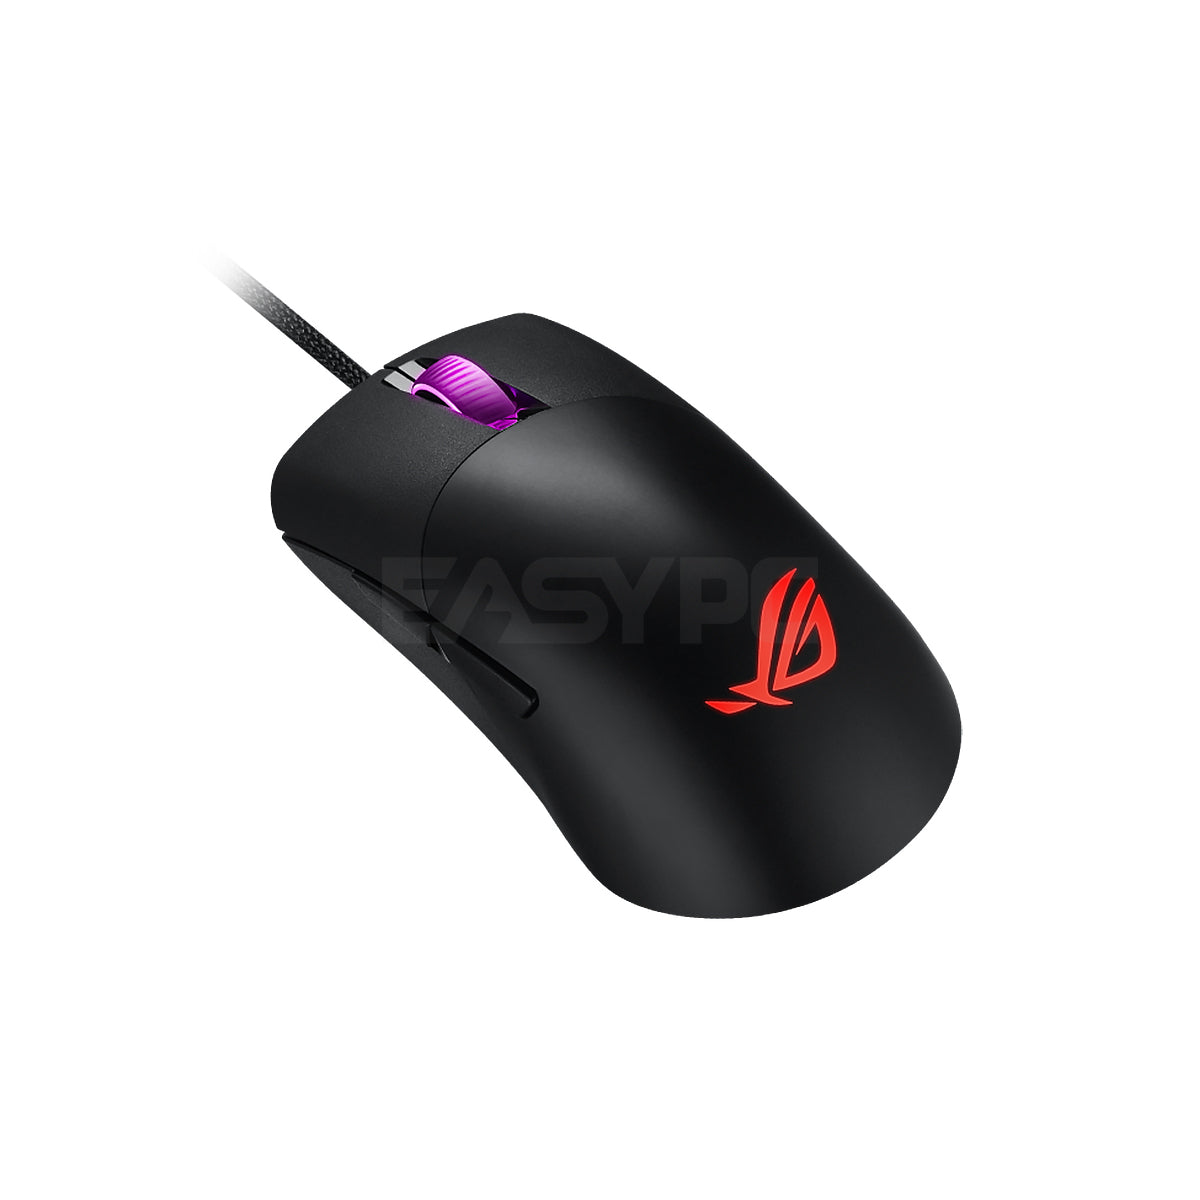 Asus ROG Keris Wired RGB Gaming Mouse